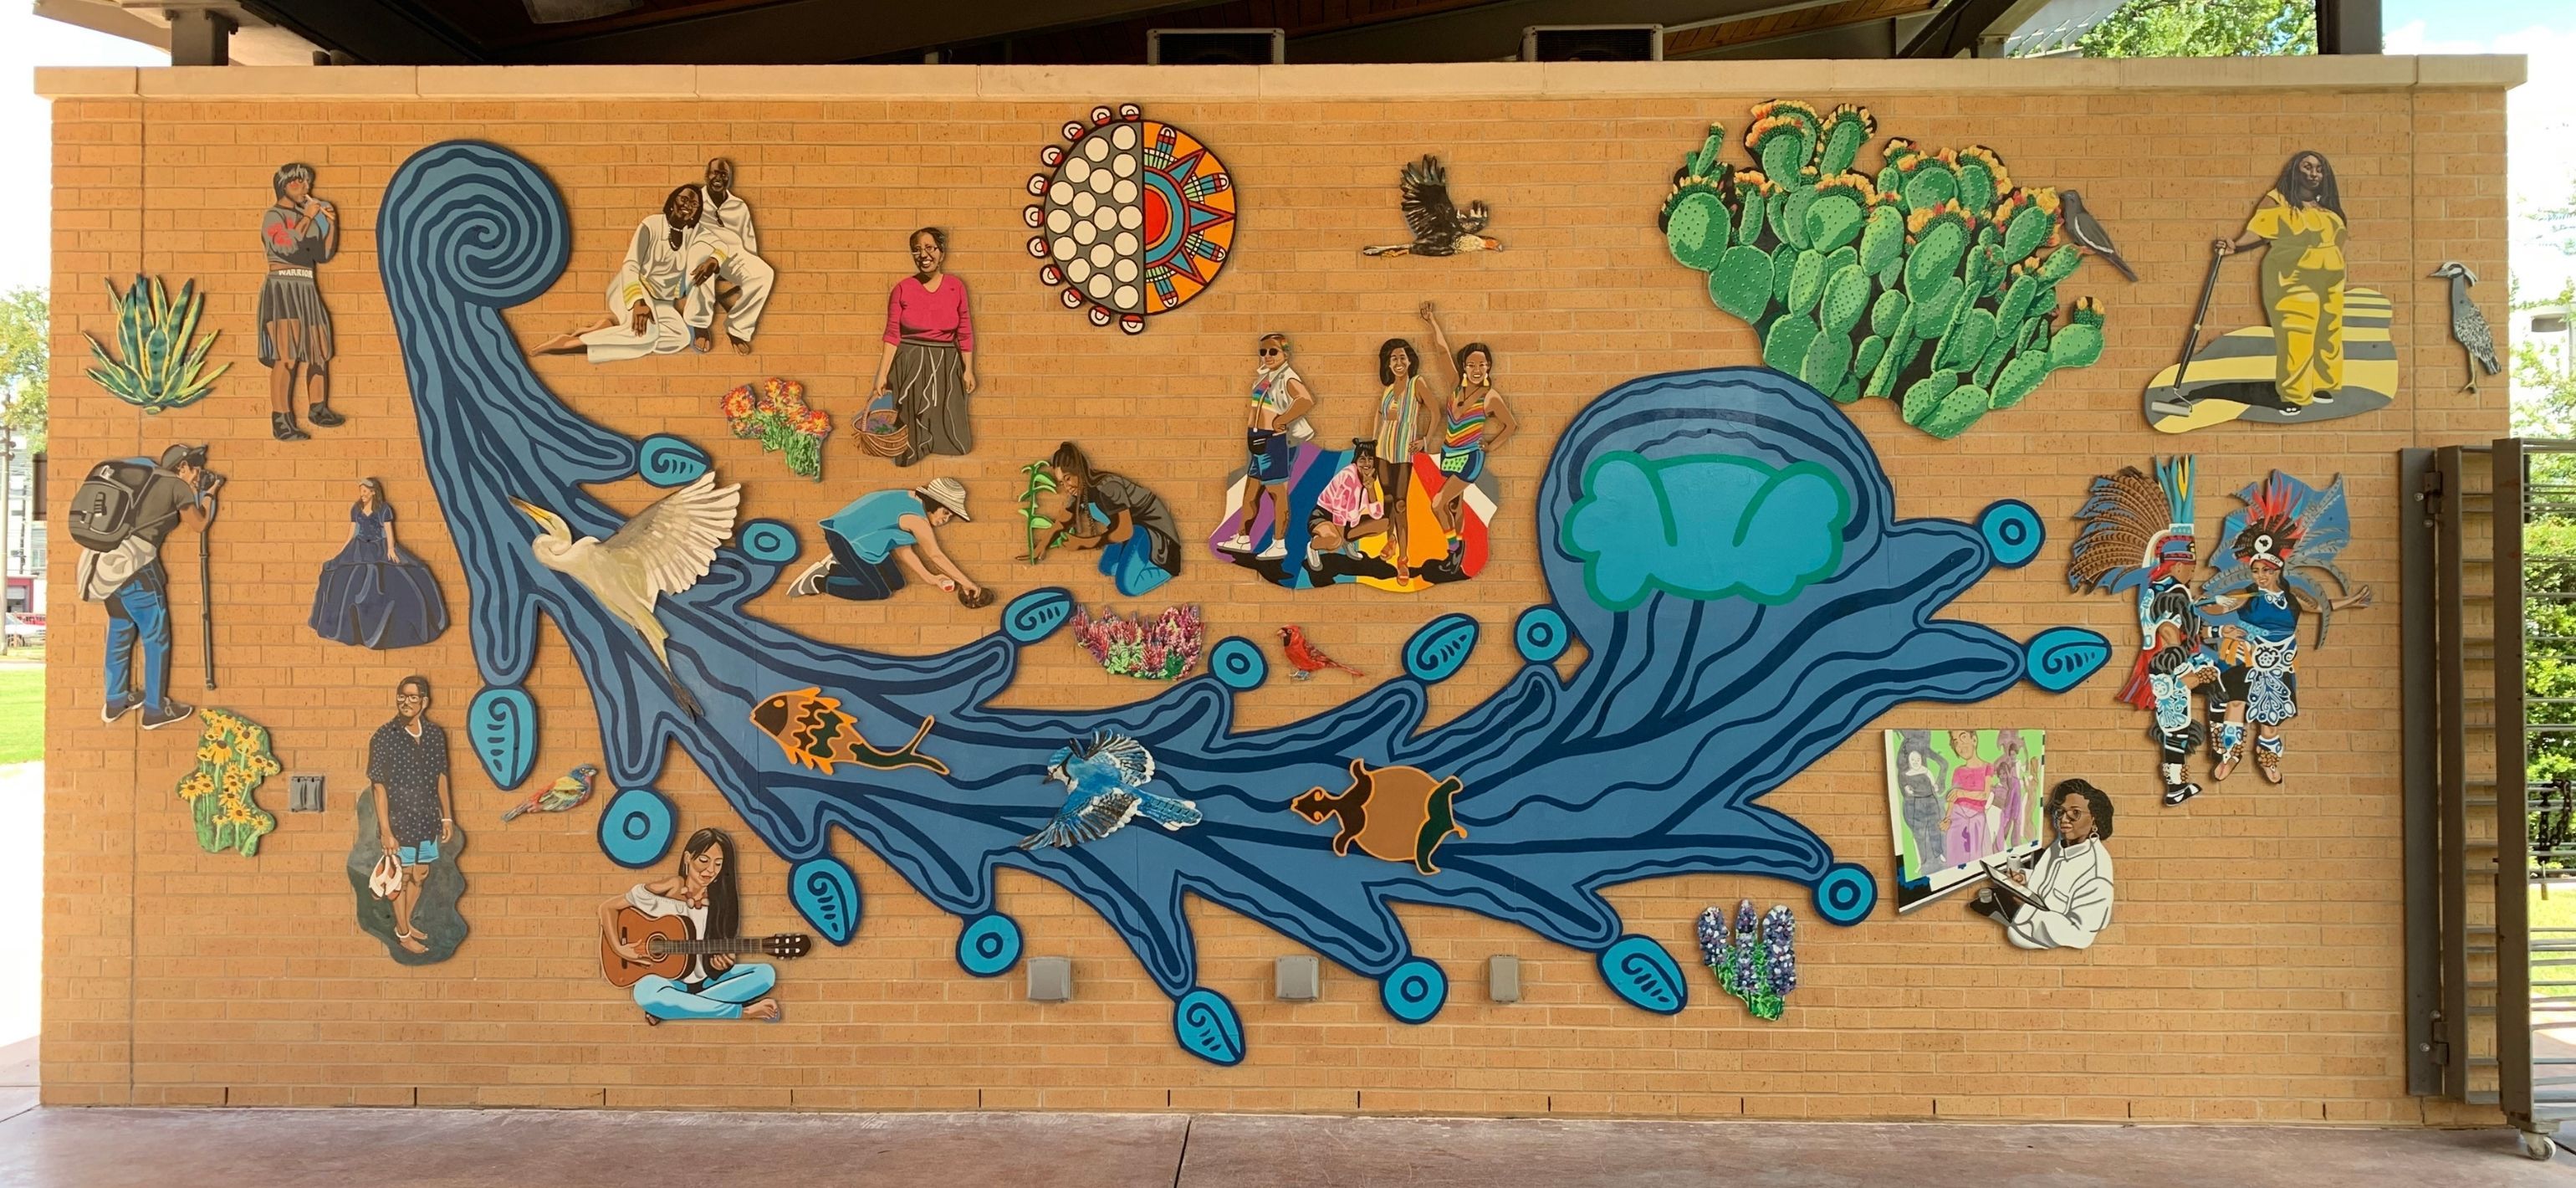 SAMA Community Mural by Suzy Gonzalez